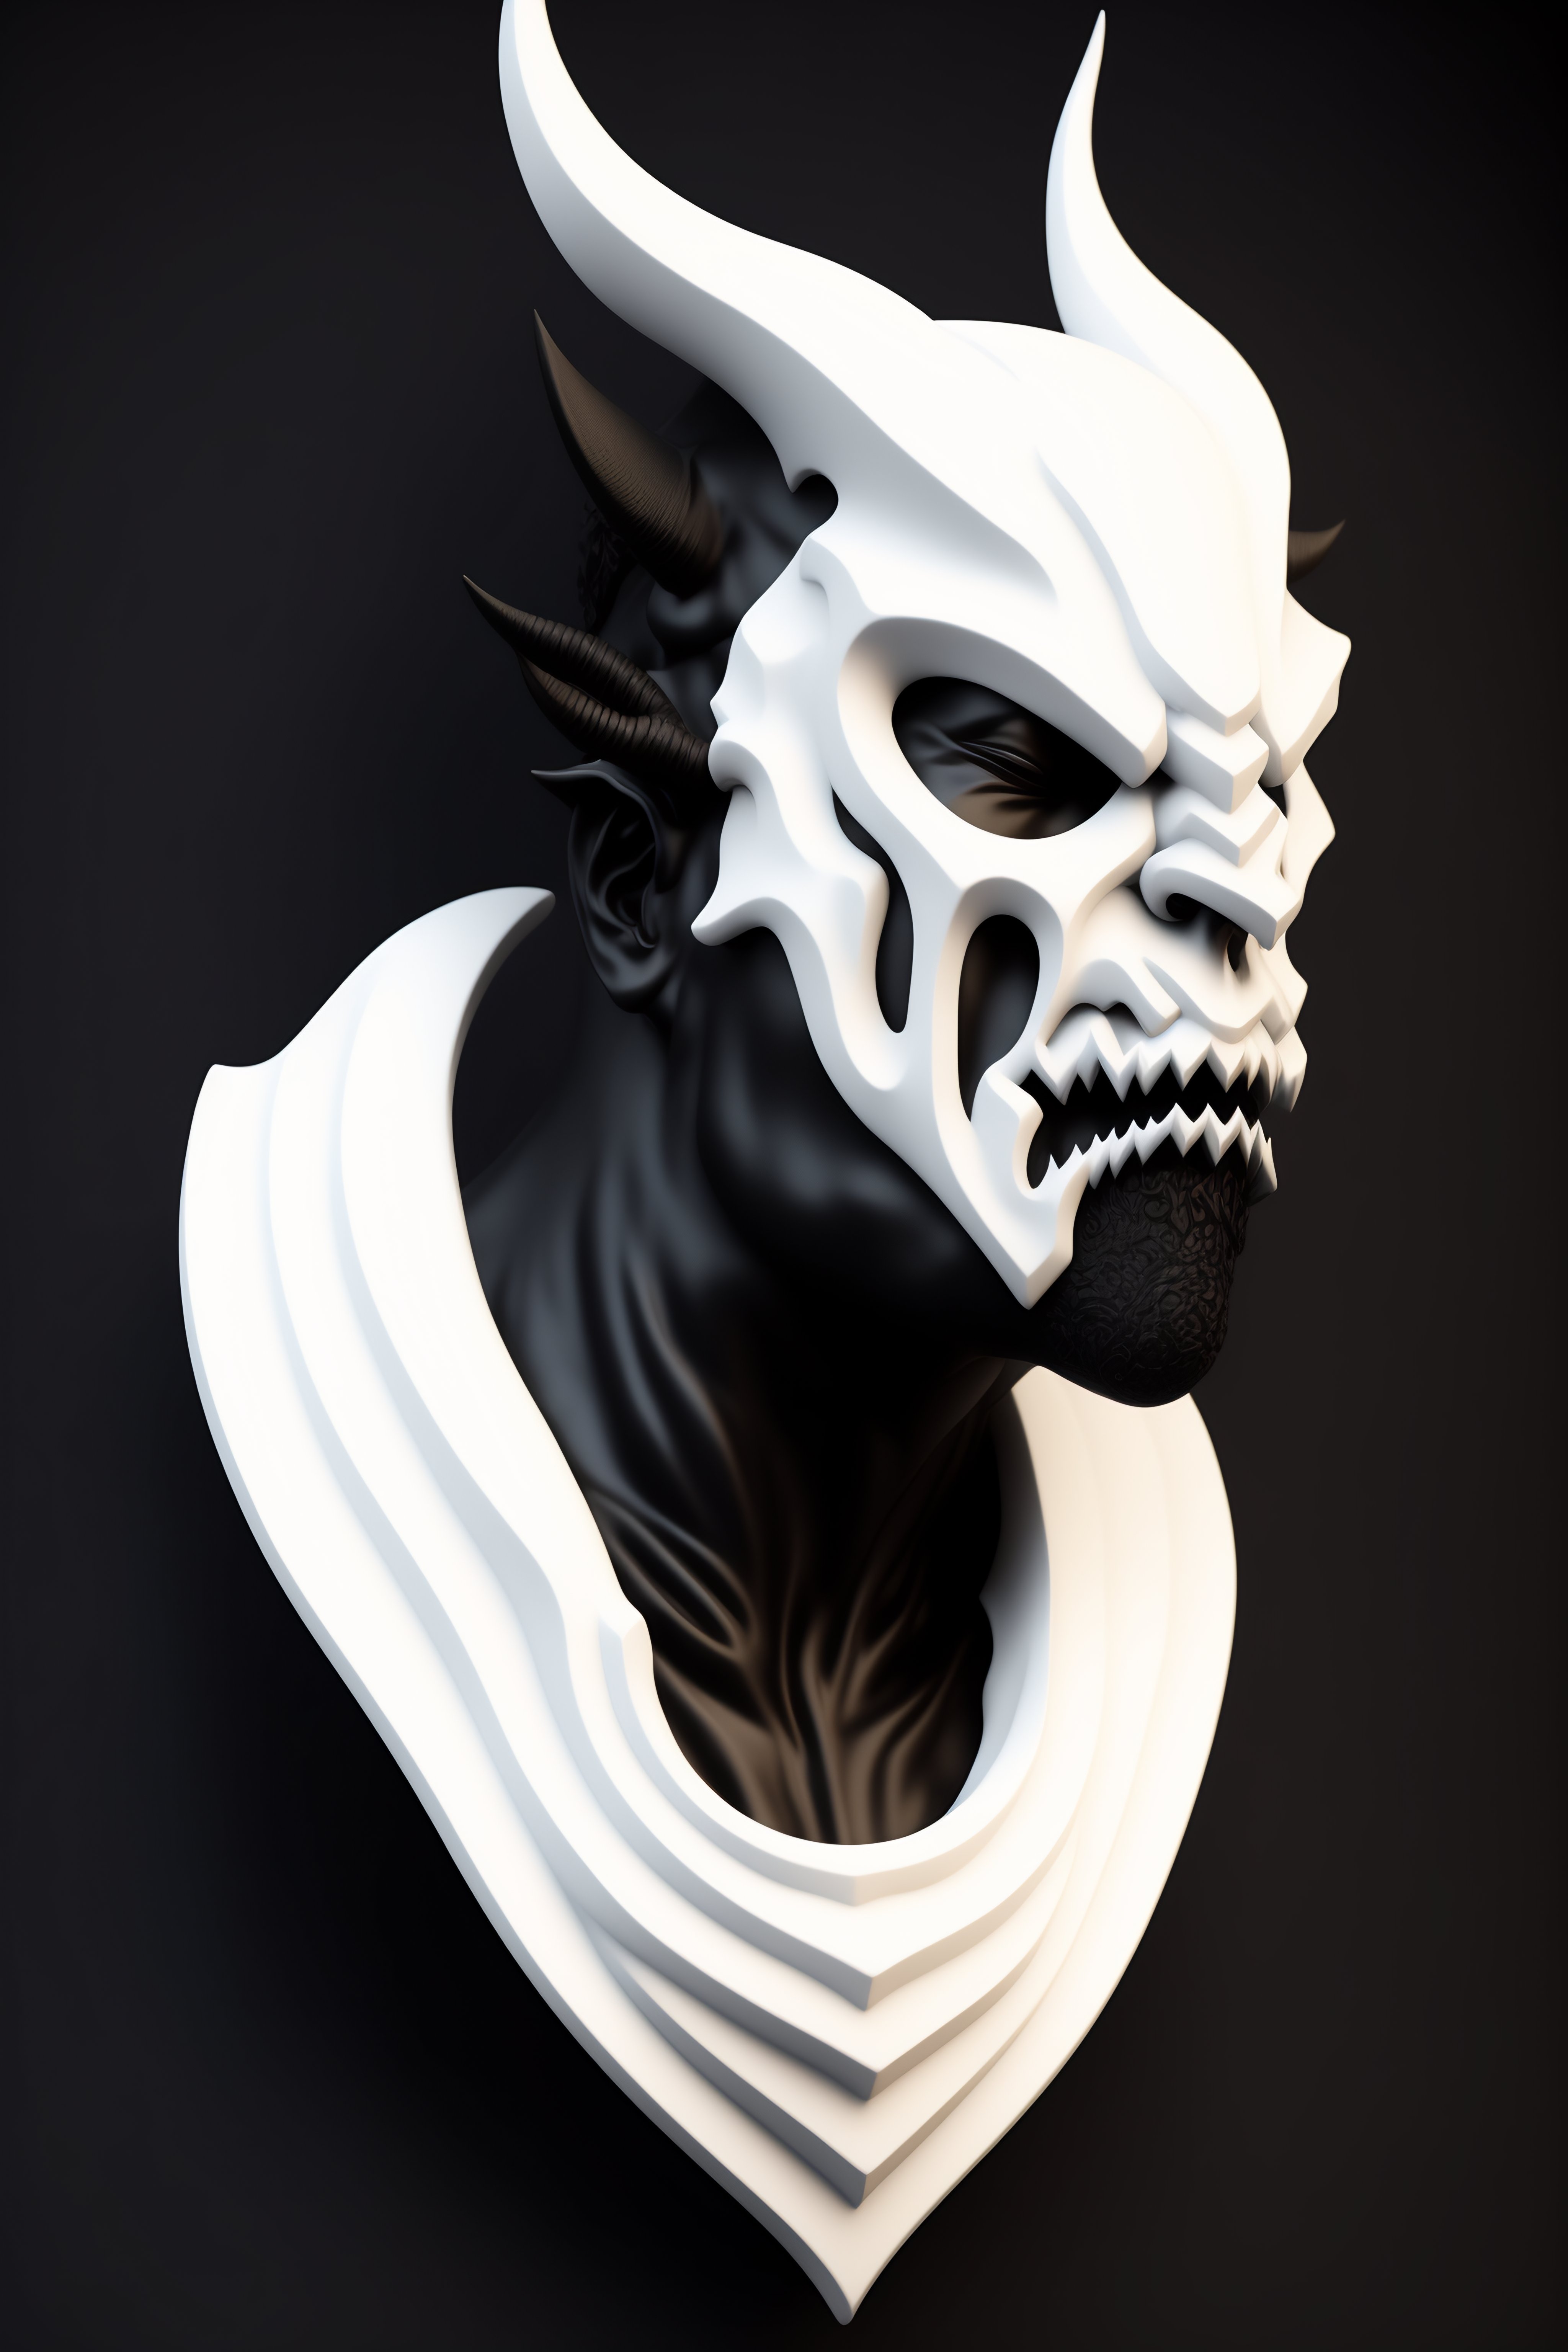 Maschera Cyberpunk Oni Gaudi bianca e nera · Creative Fabrica